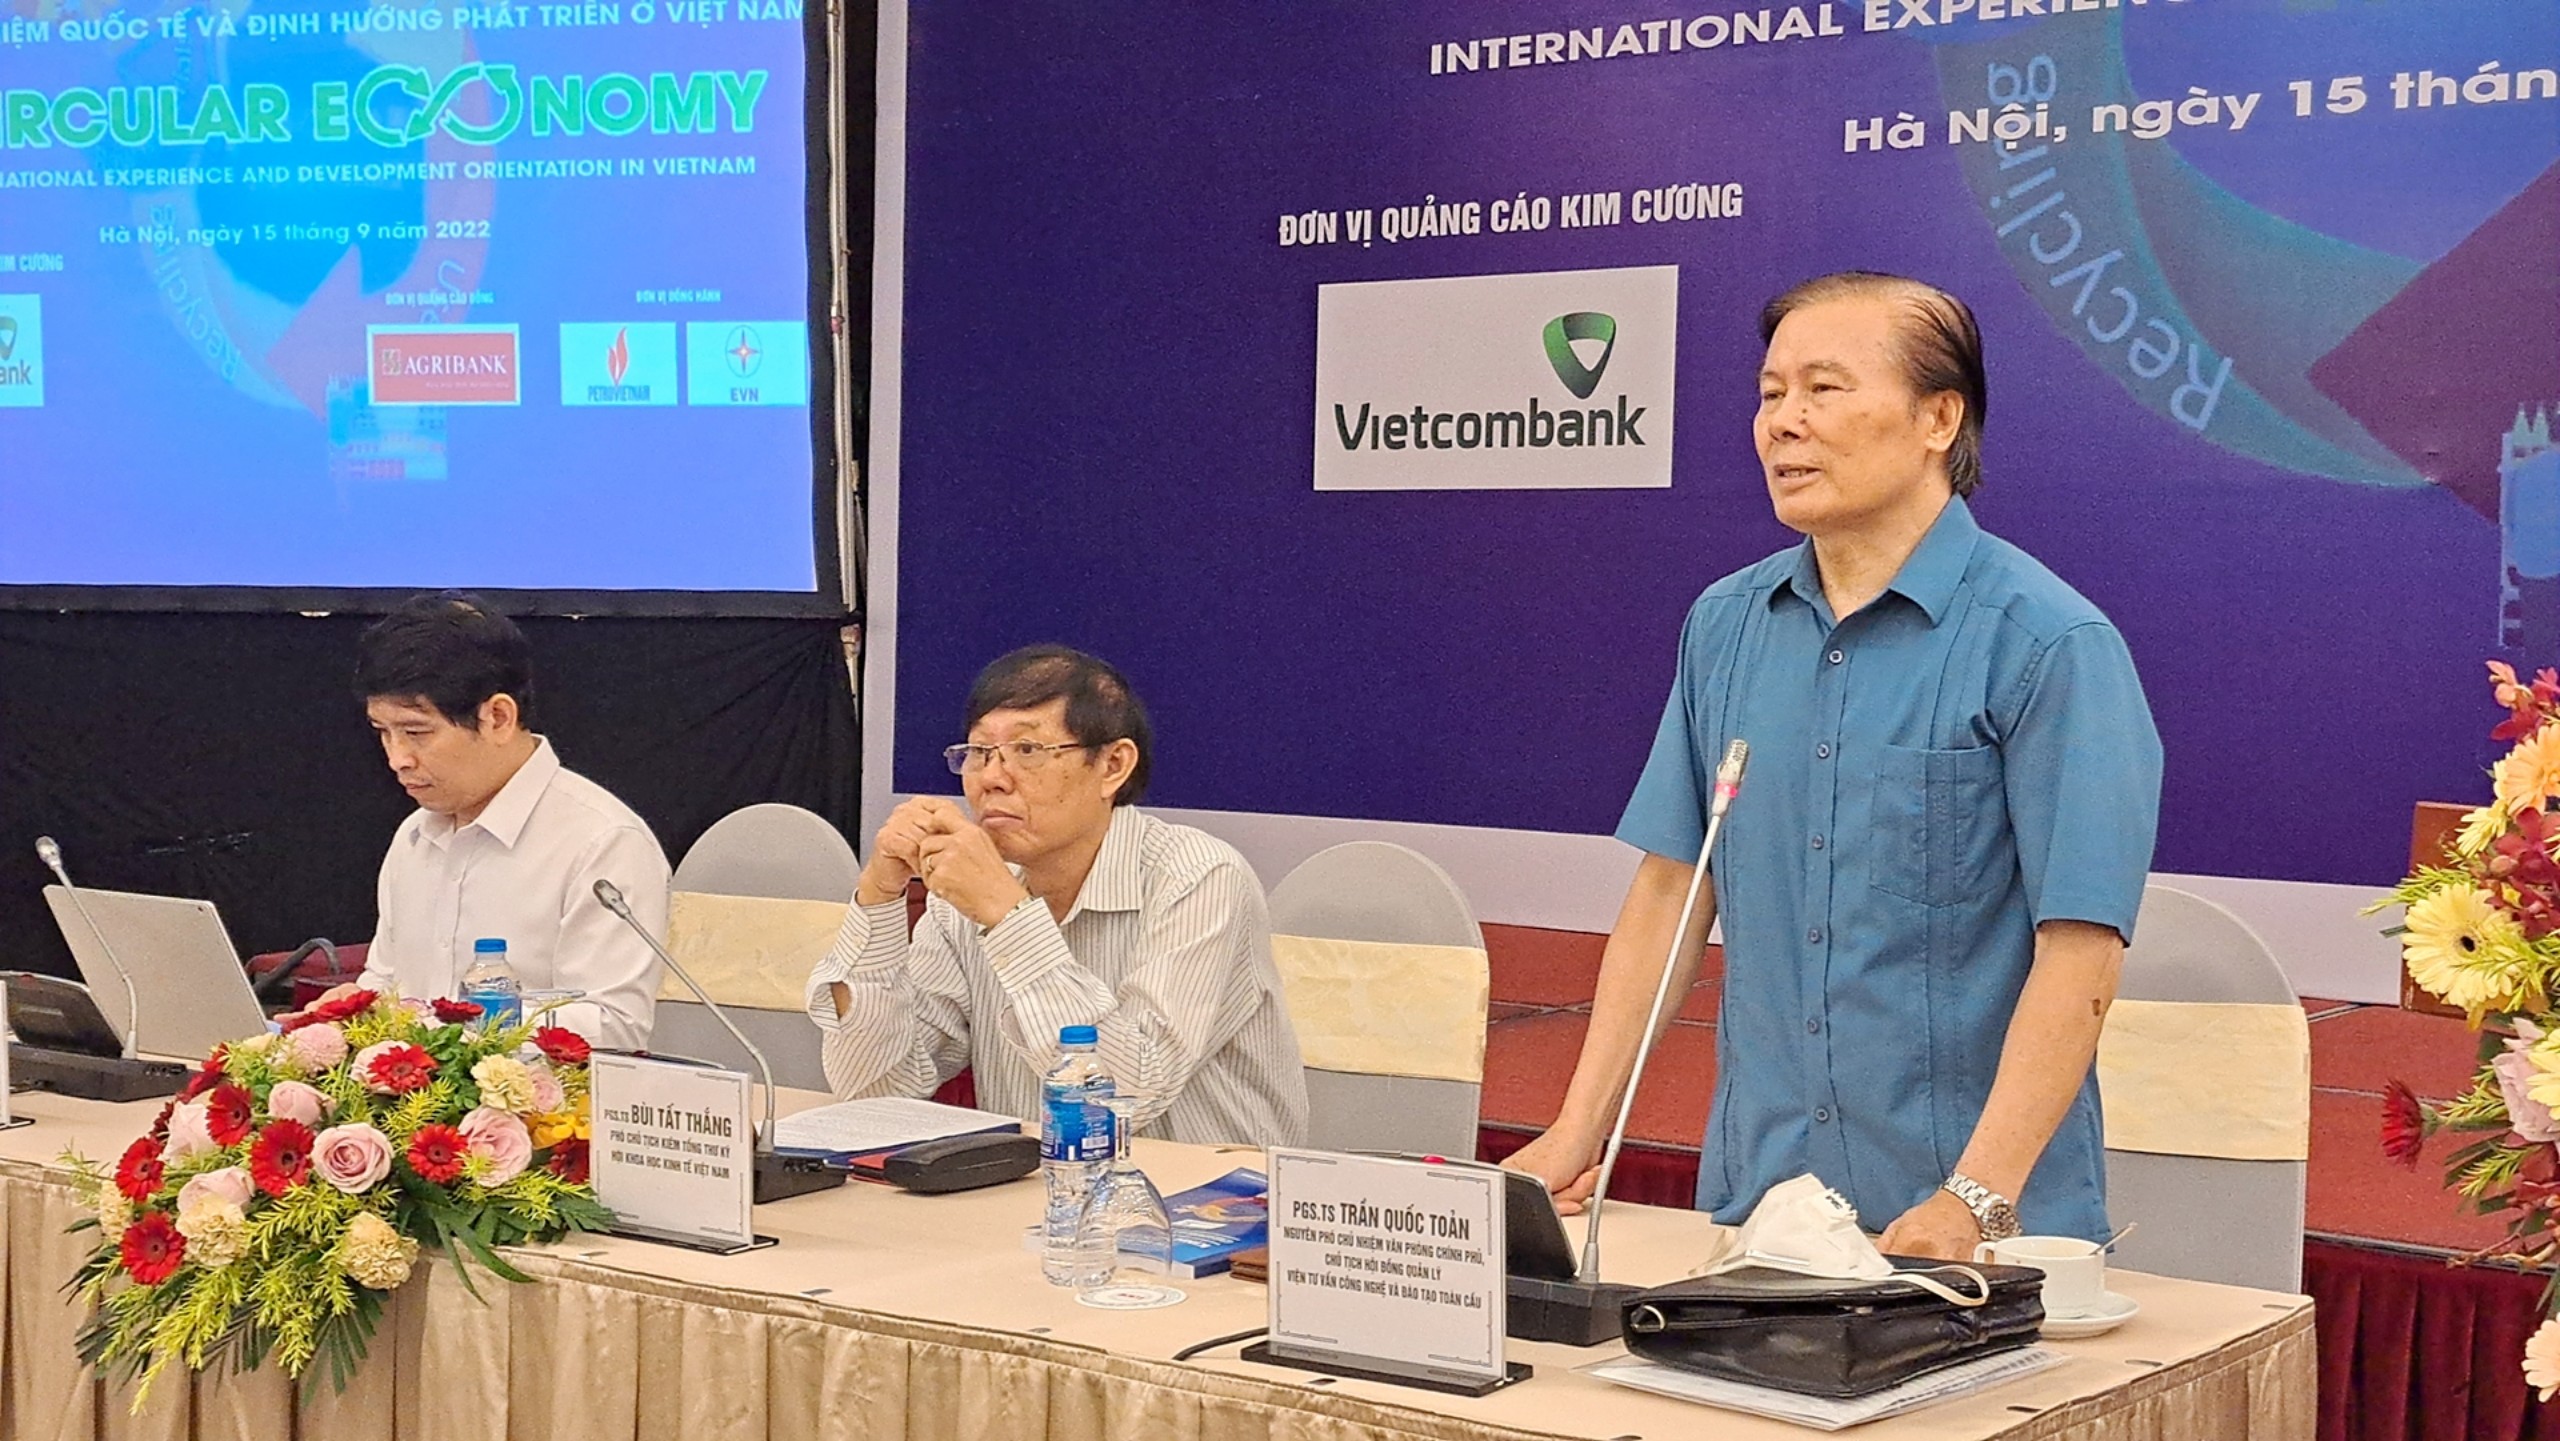 Áp dụng kinh tế tuần hoàn tại Việt Nam - xu hướng tất yếu nhằm hướng tới phát triển bền vững - 8